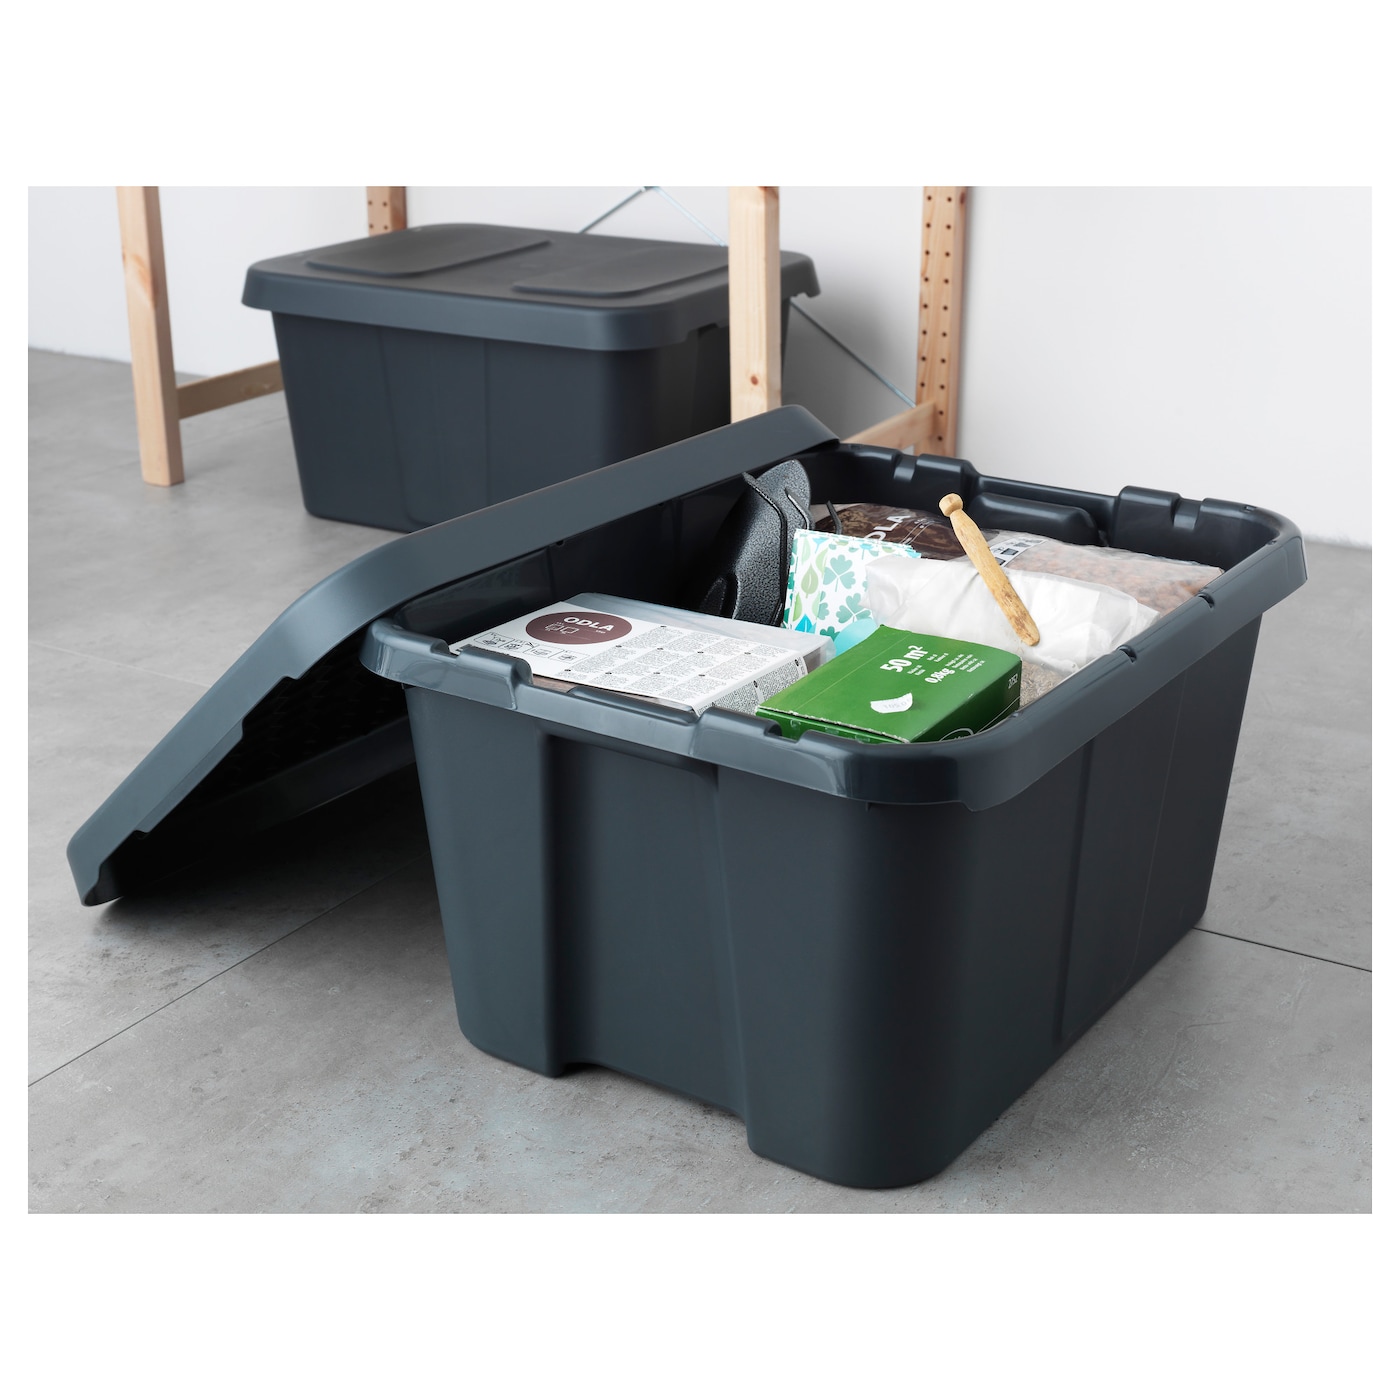 [ส่งฟรี ] กล่องพร้อมฝาปิด ในบ้าน/กลางแจ้ง, เทาเข้ม 58x45x30 ซม. Box with lid, in/outdoor, dark grey58x45x30 cm For Stroage room Indoor Outdoor